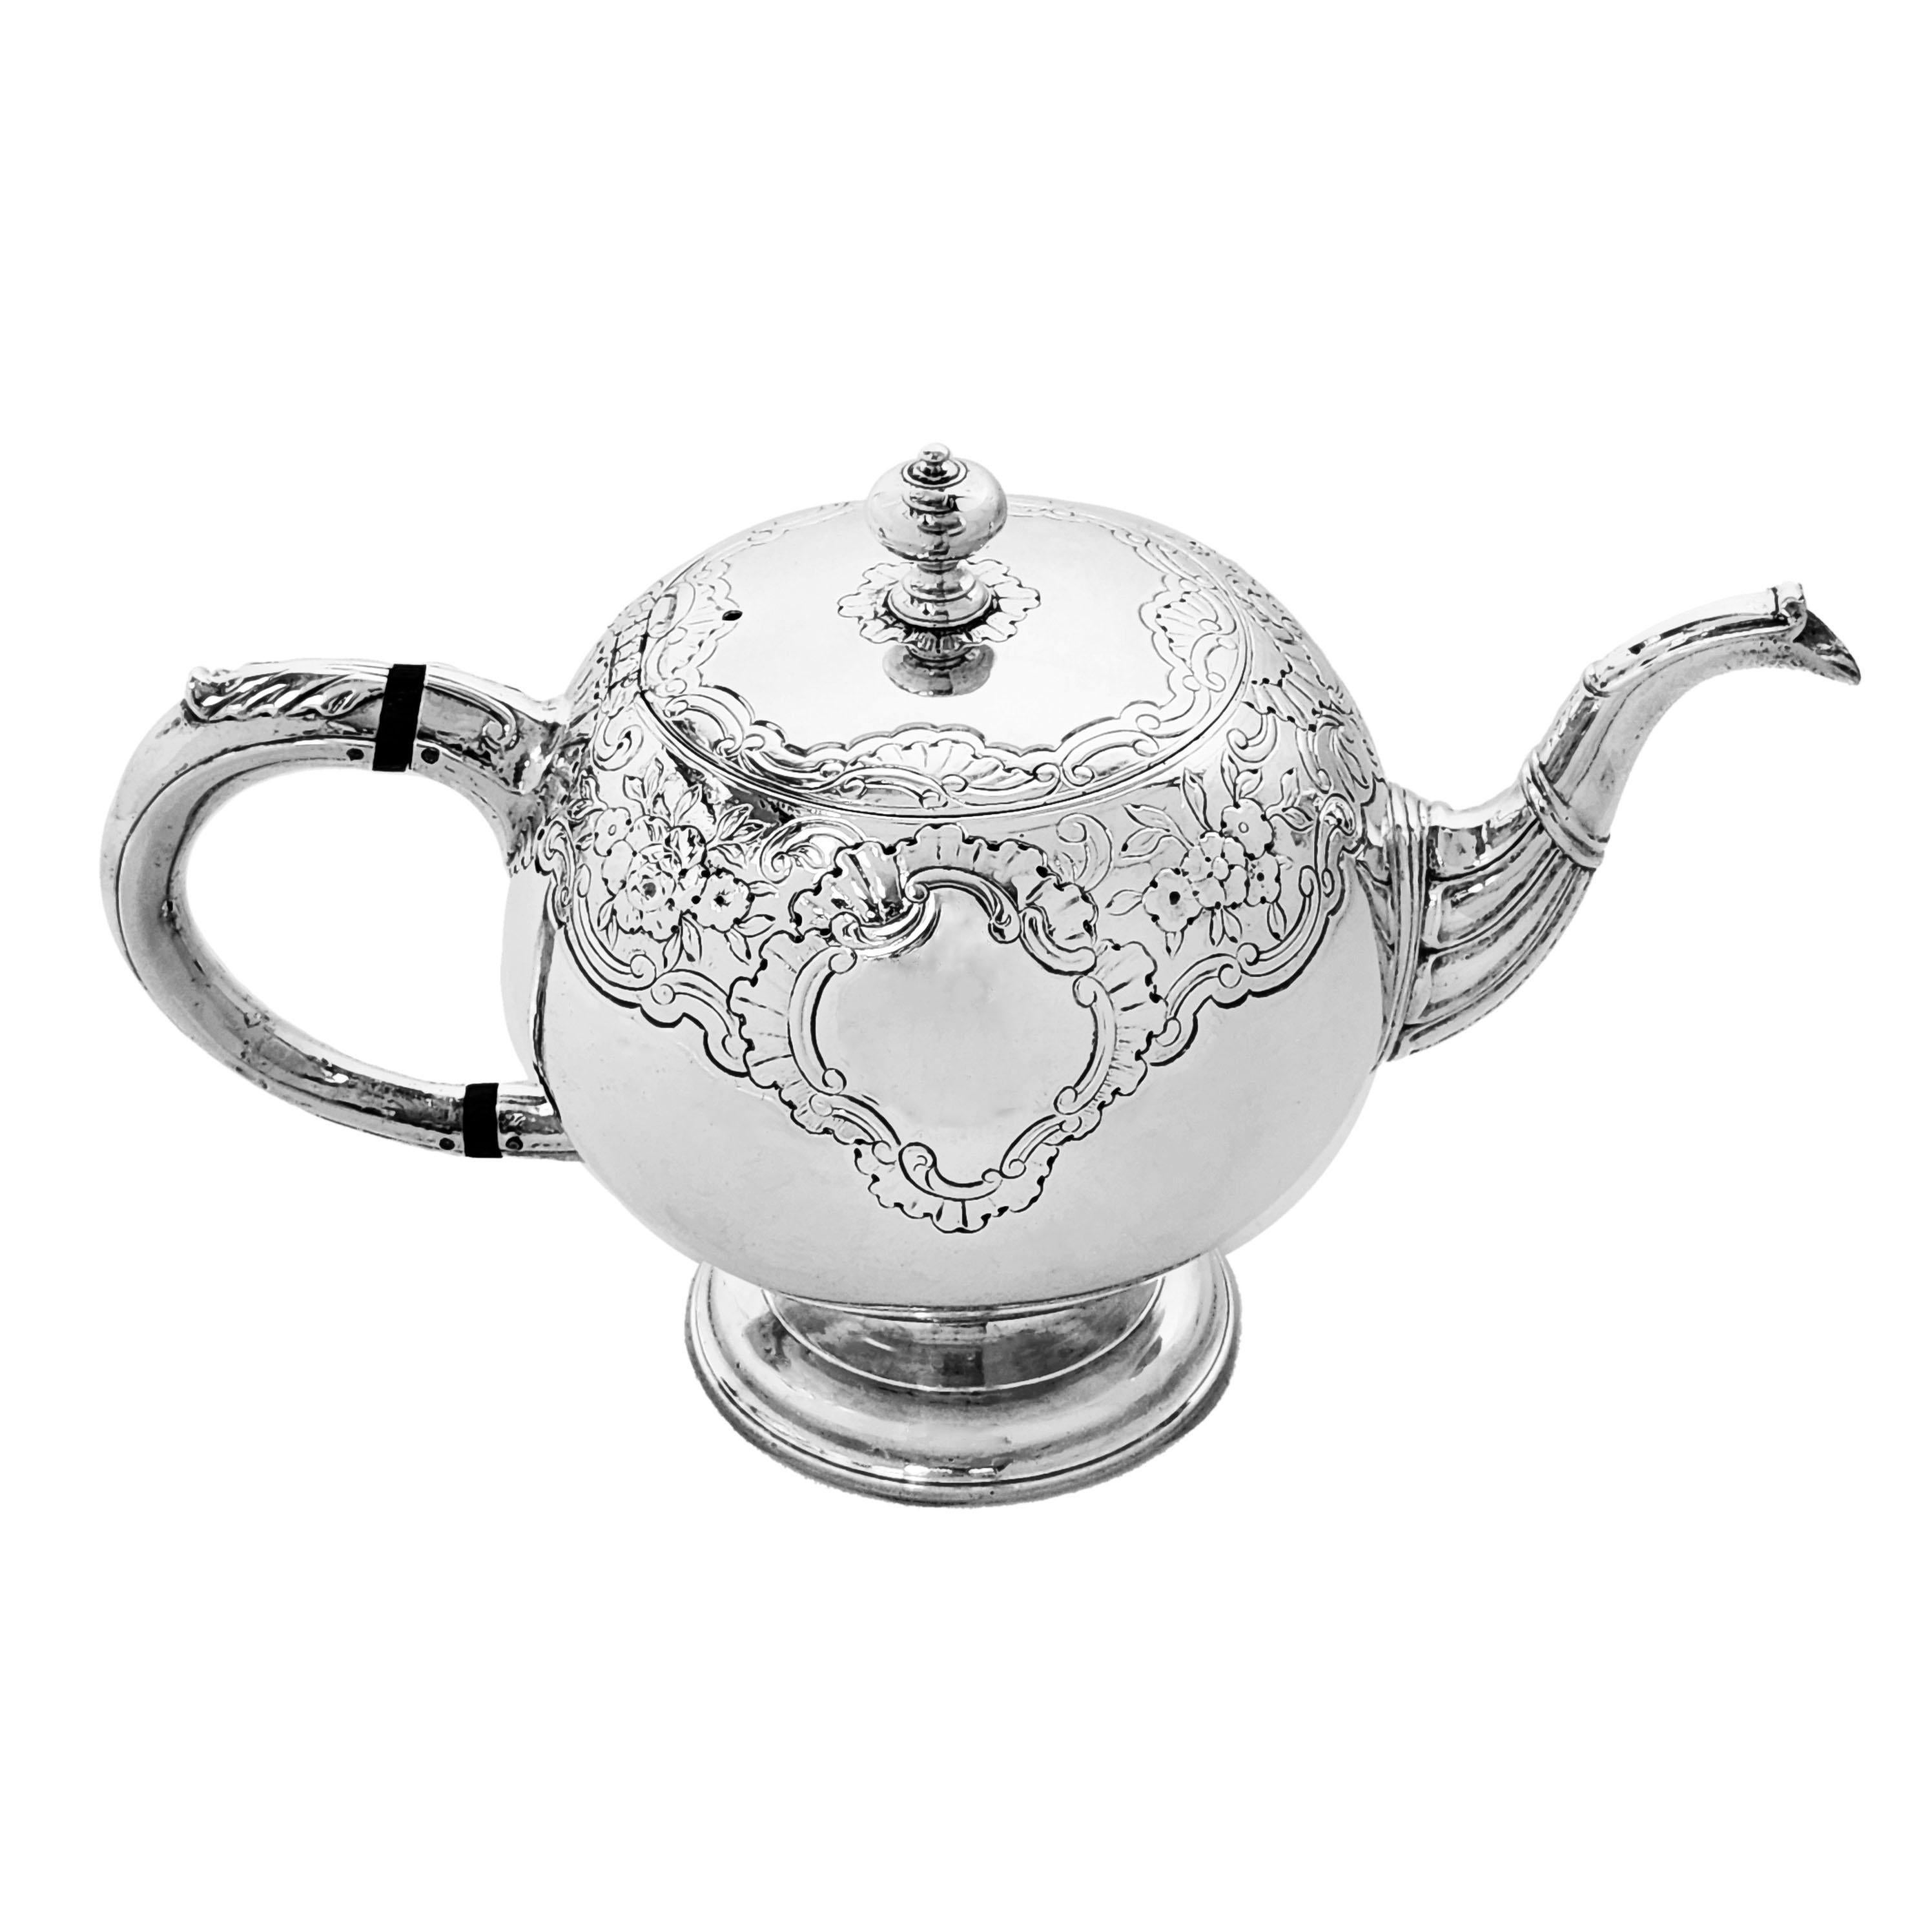 Eine schöne antike Teekanne aus schottischem Silber von George II in klassischer runder Kugelform. Diese georgianische Teekanne ist mit einem schönen gravierten Muster aus Blumen- und Schneckenmustern verziert, die ein Kartuschenpaar